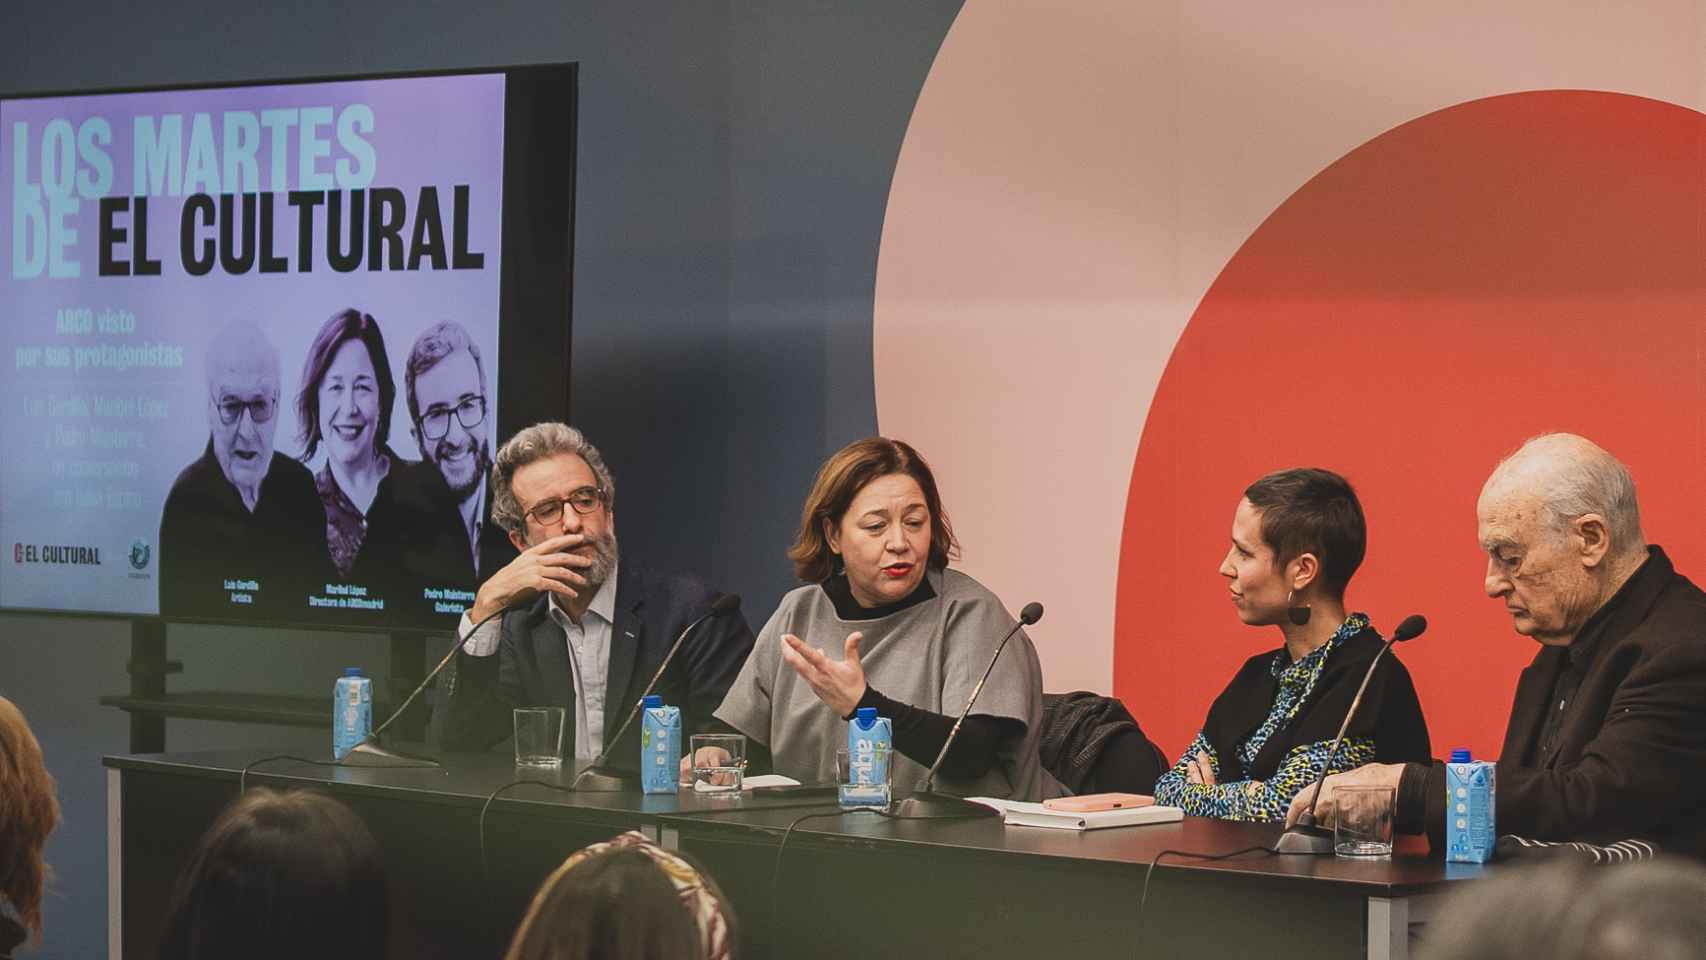 Pedro Maisterra, galerista; Maribel López, directora de ARCO; Luisa Espino, jefa de Arte en El Cultural; y Luis Gordillo, artista, durante la conversación enmarcada en el ciclo Los Martes de El Cultural que se celebró en el Círculo de Bellas Artes